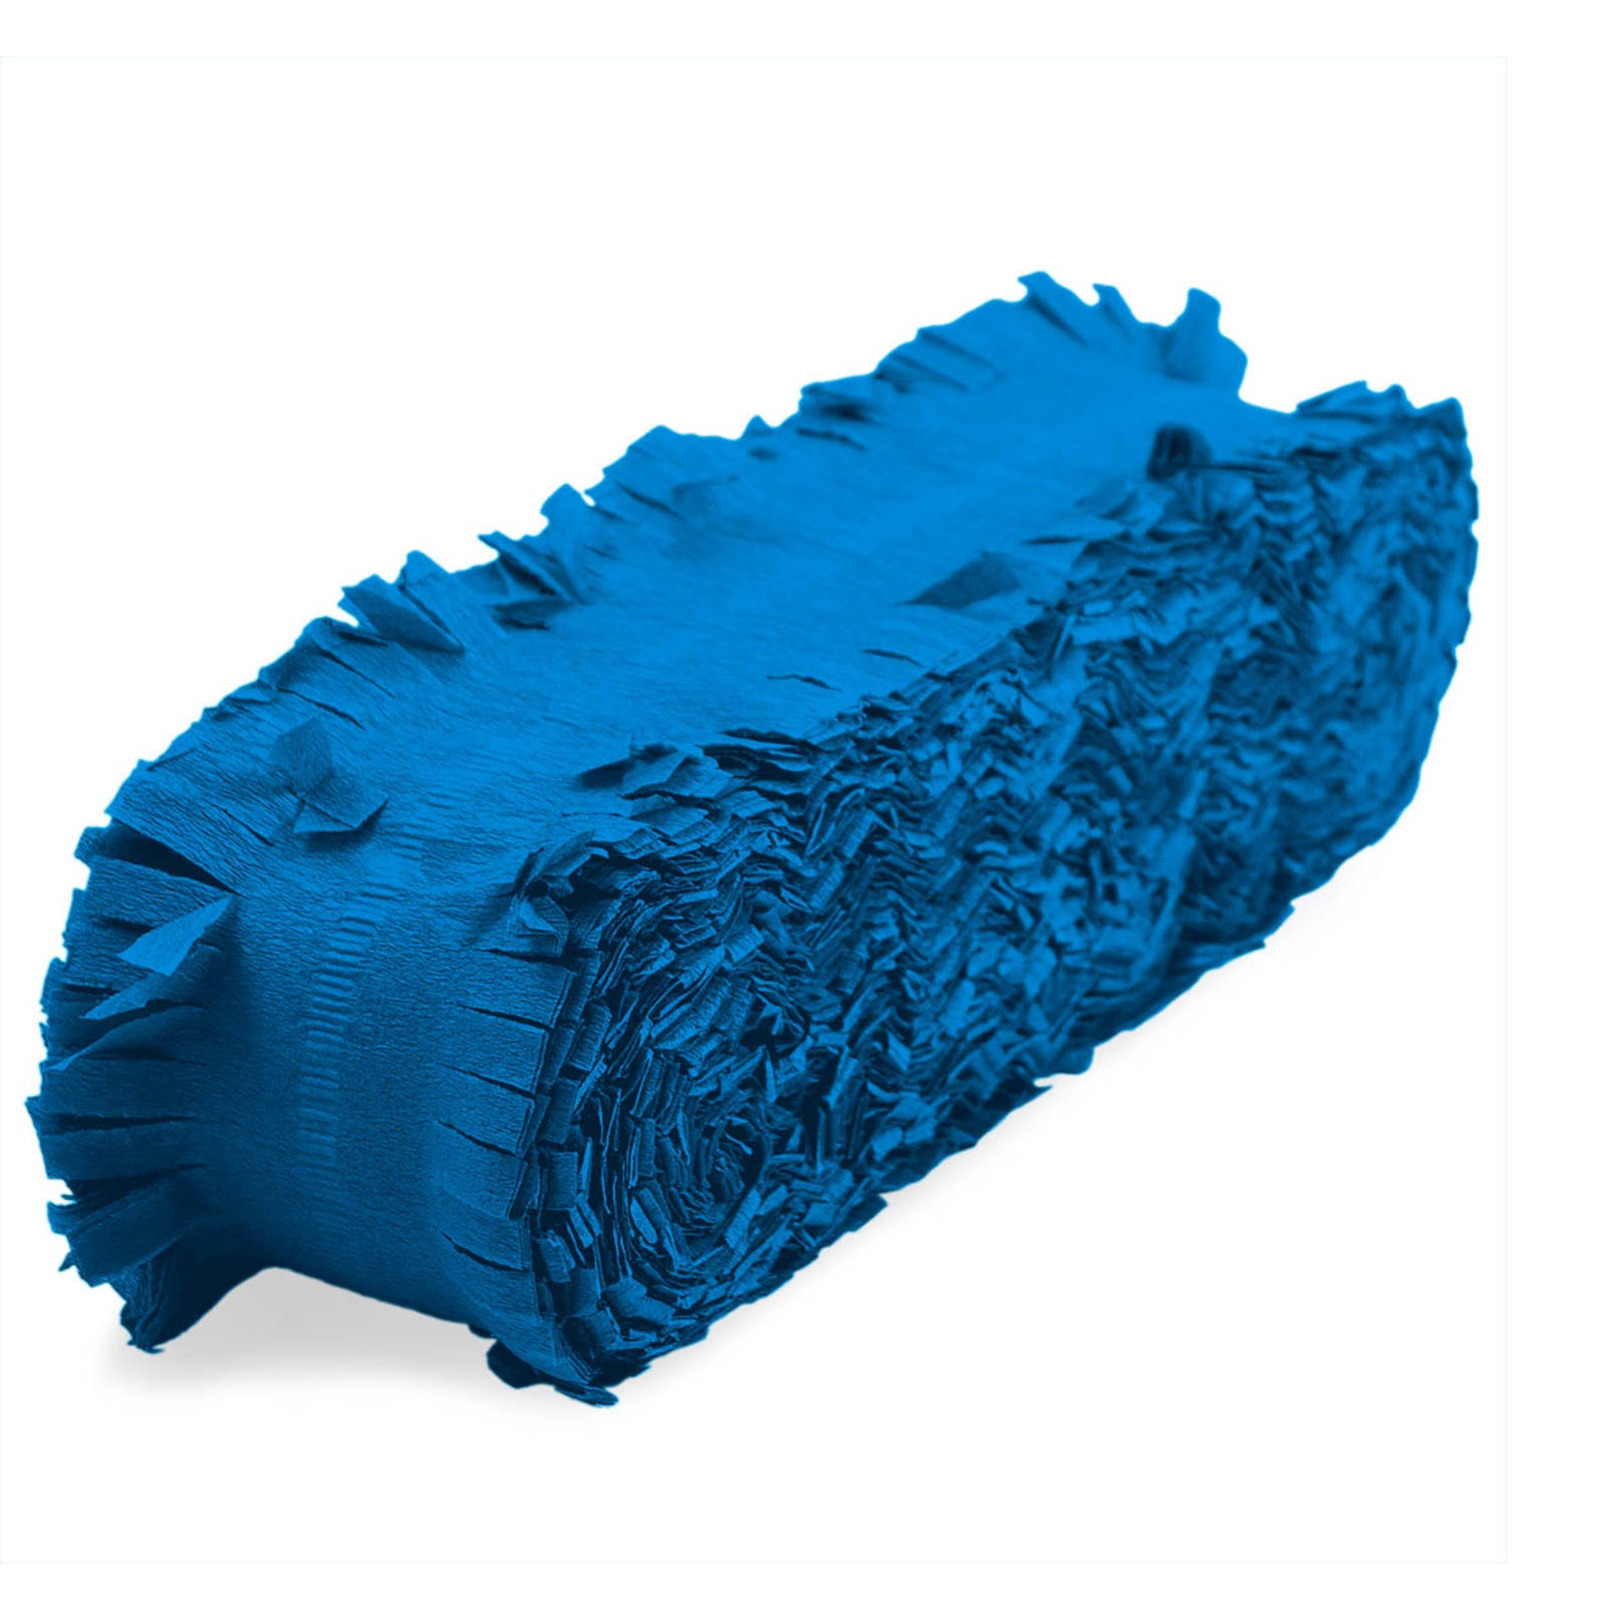 Feest/verjaardag versiering slingers blauw 24 meter crepe papier